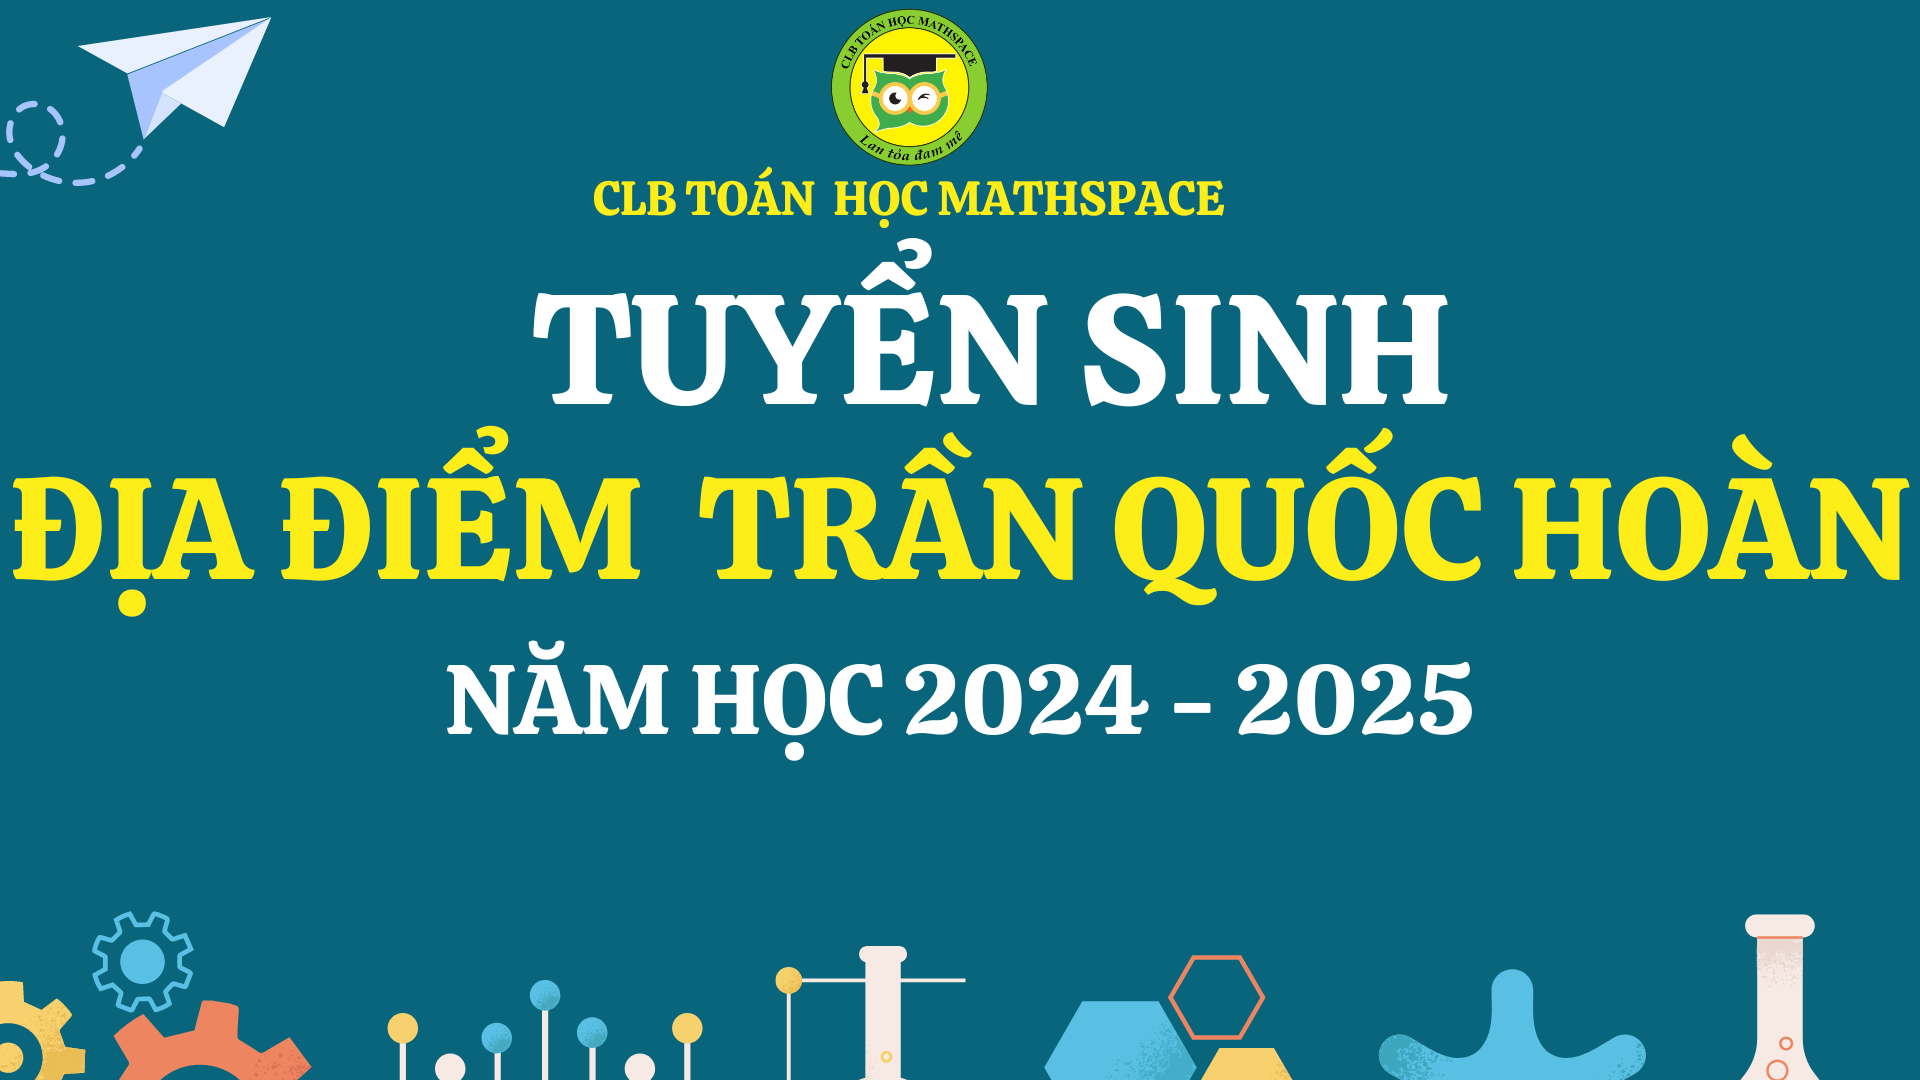 ĐỊA ĐIỂM TRẦN QUỐC HOÀN - TUYỂN SINH NĂM HỌC 2024-2025